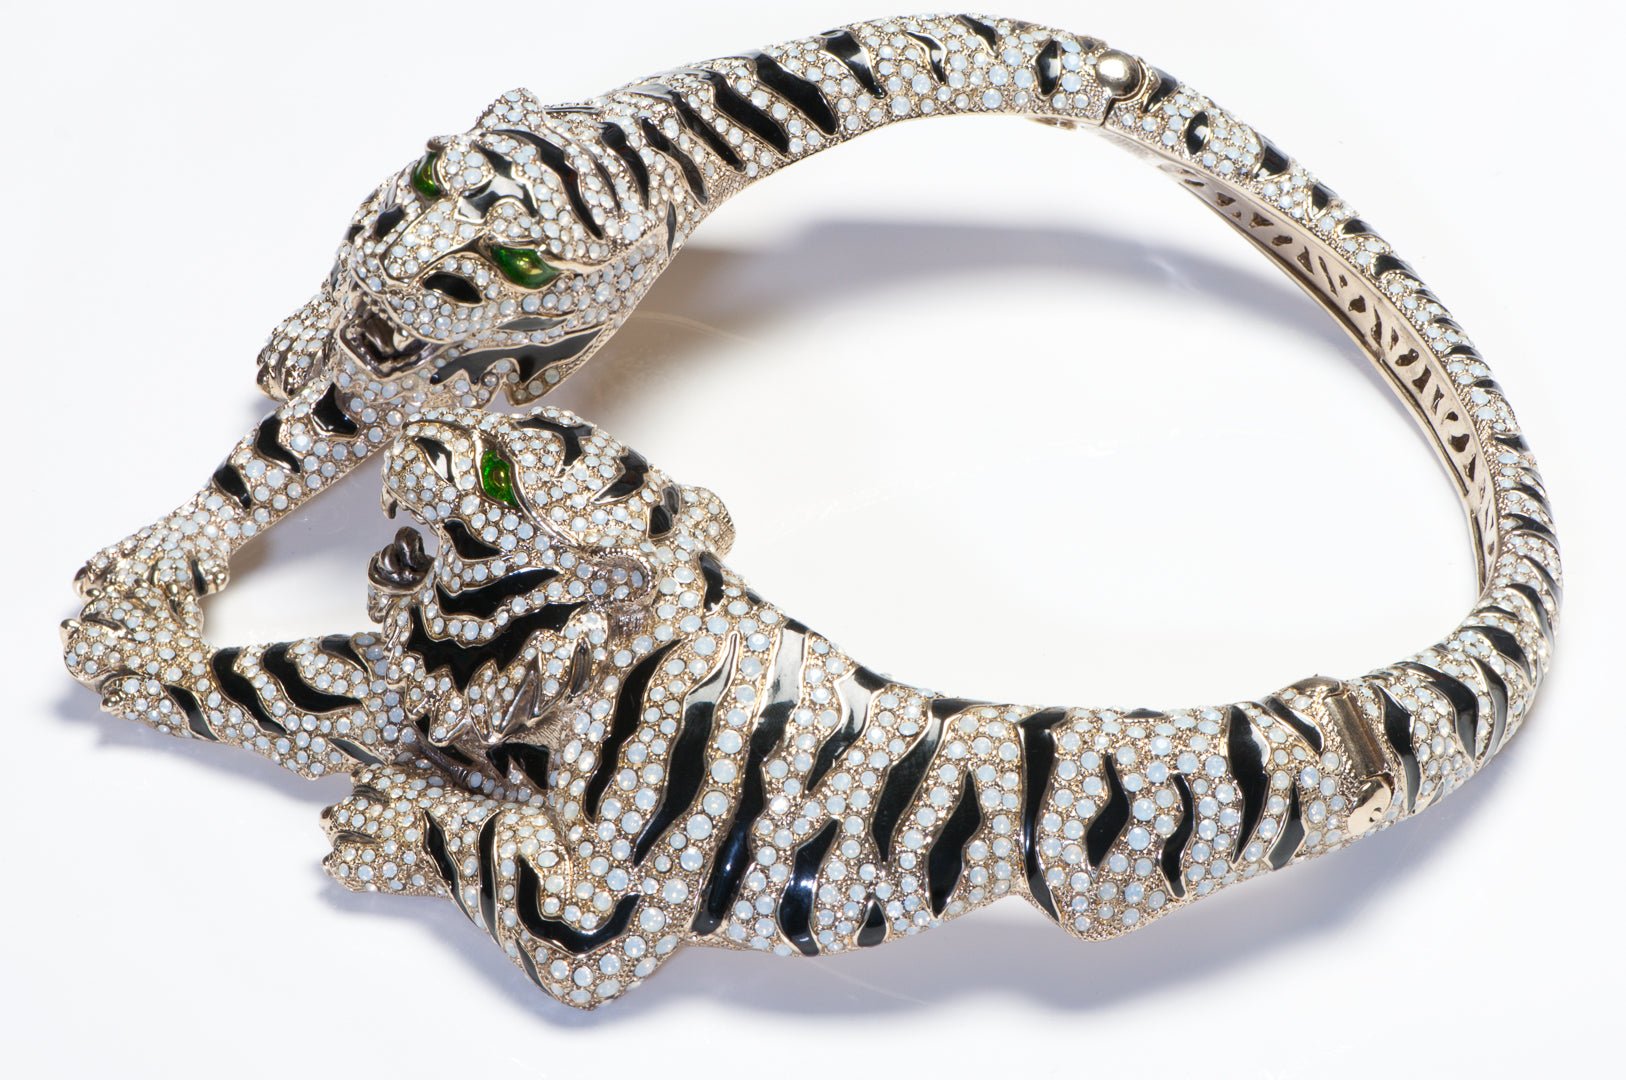 Roberto Cavalli Spring 2013 Black Enamel Tiger Opaline Crystal Collar Necklace